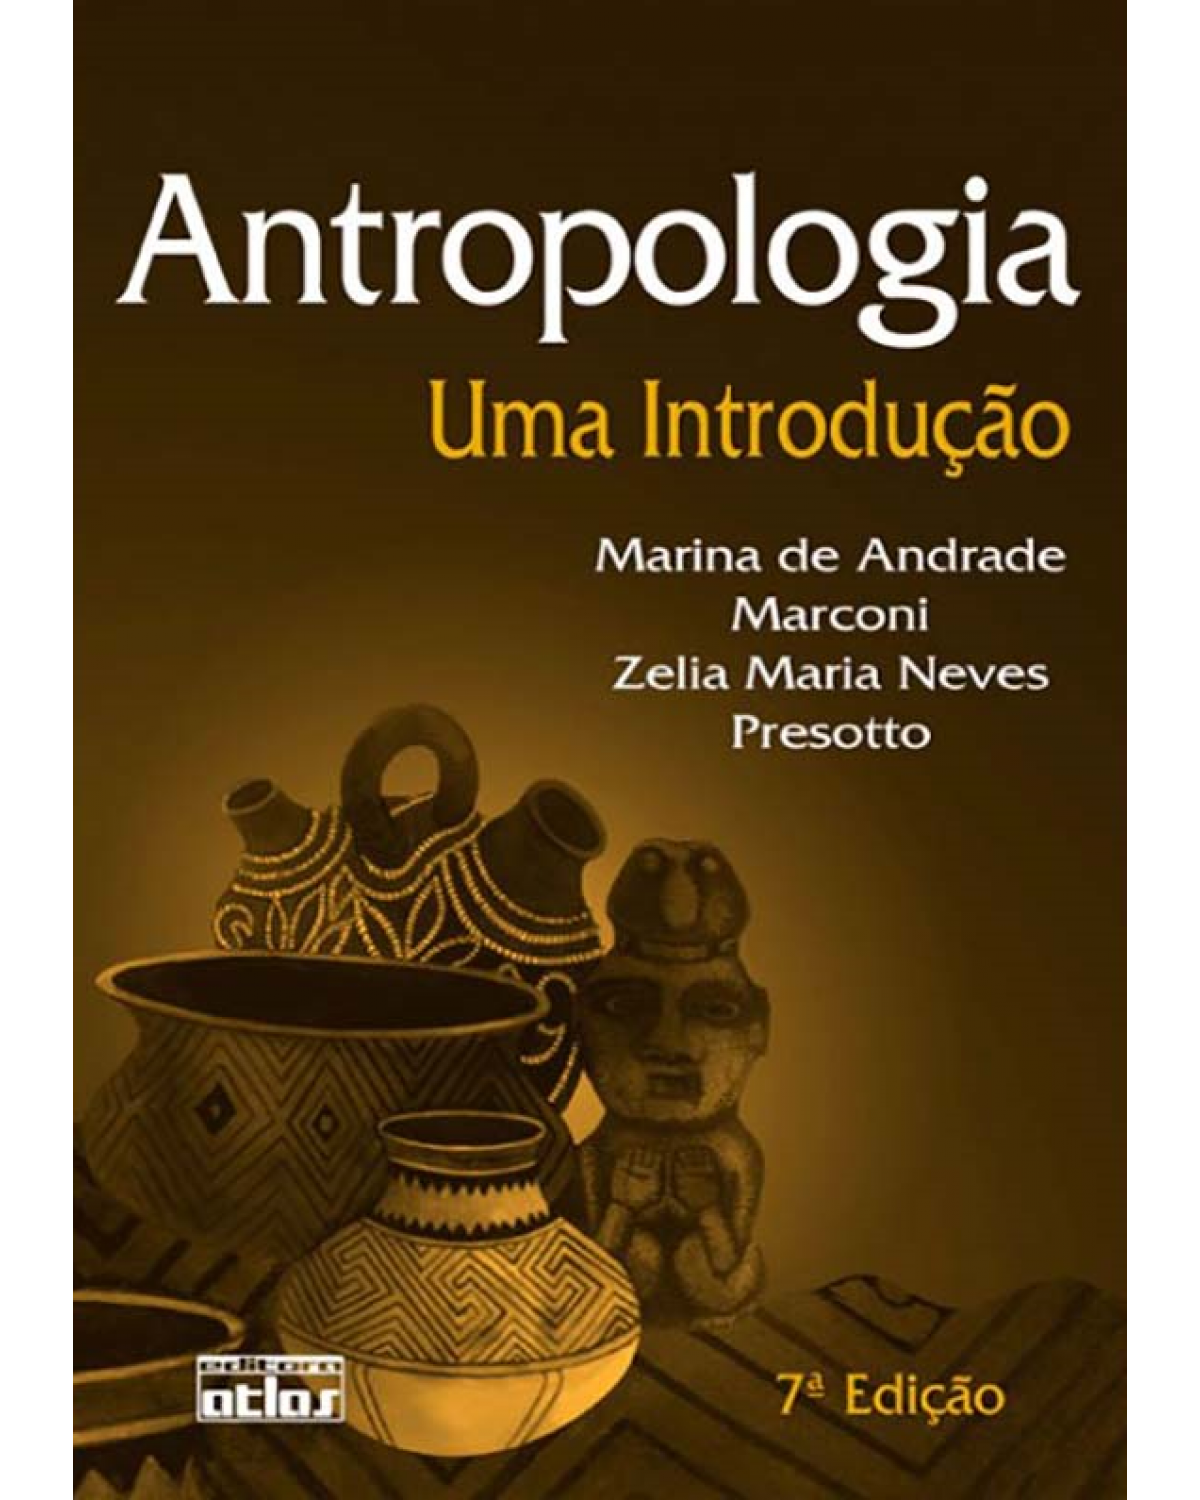 Antropologia - Uma introdução - 7ª Edição | 2008